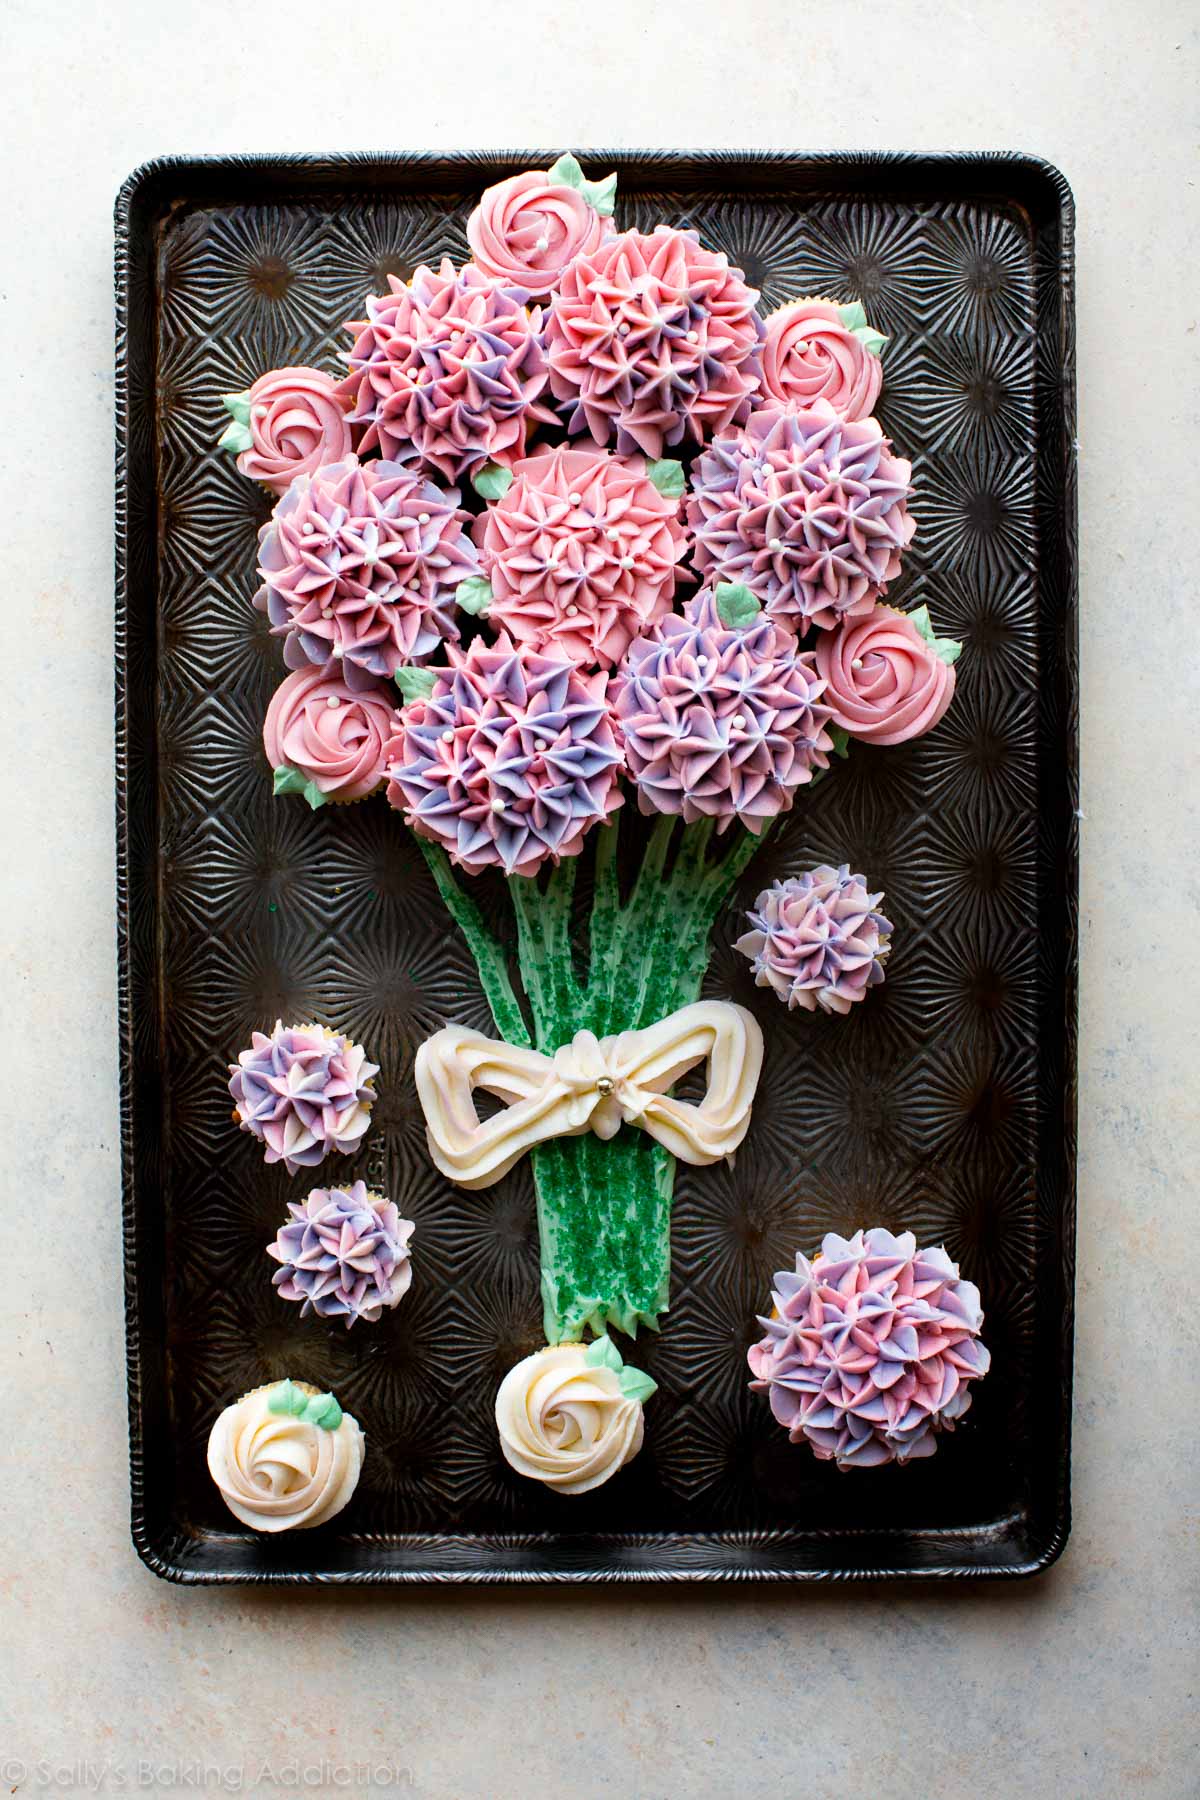 Comment faire un bouquet de cupcakes avec des cupcakes roses décorés et des cupcakes d'hortensia! Tutoriel vidéo sur sallysbakingaddiction.com